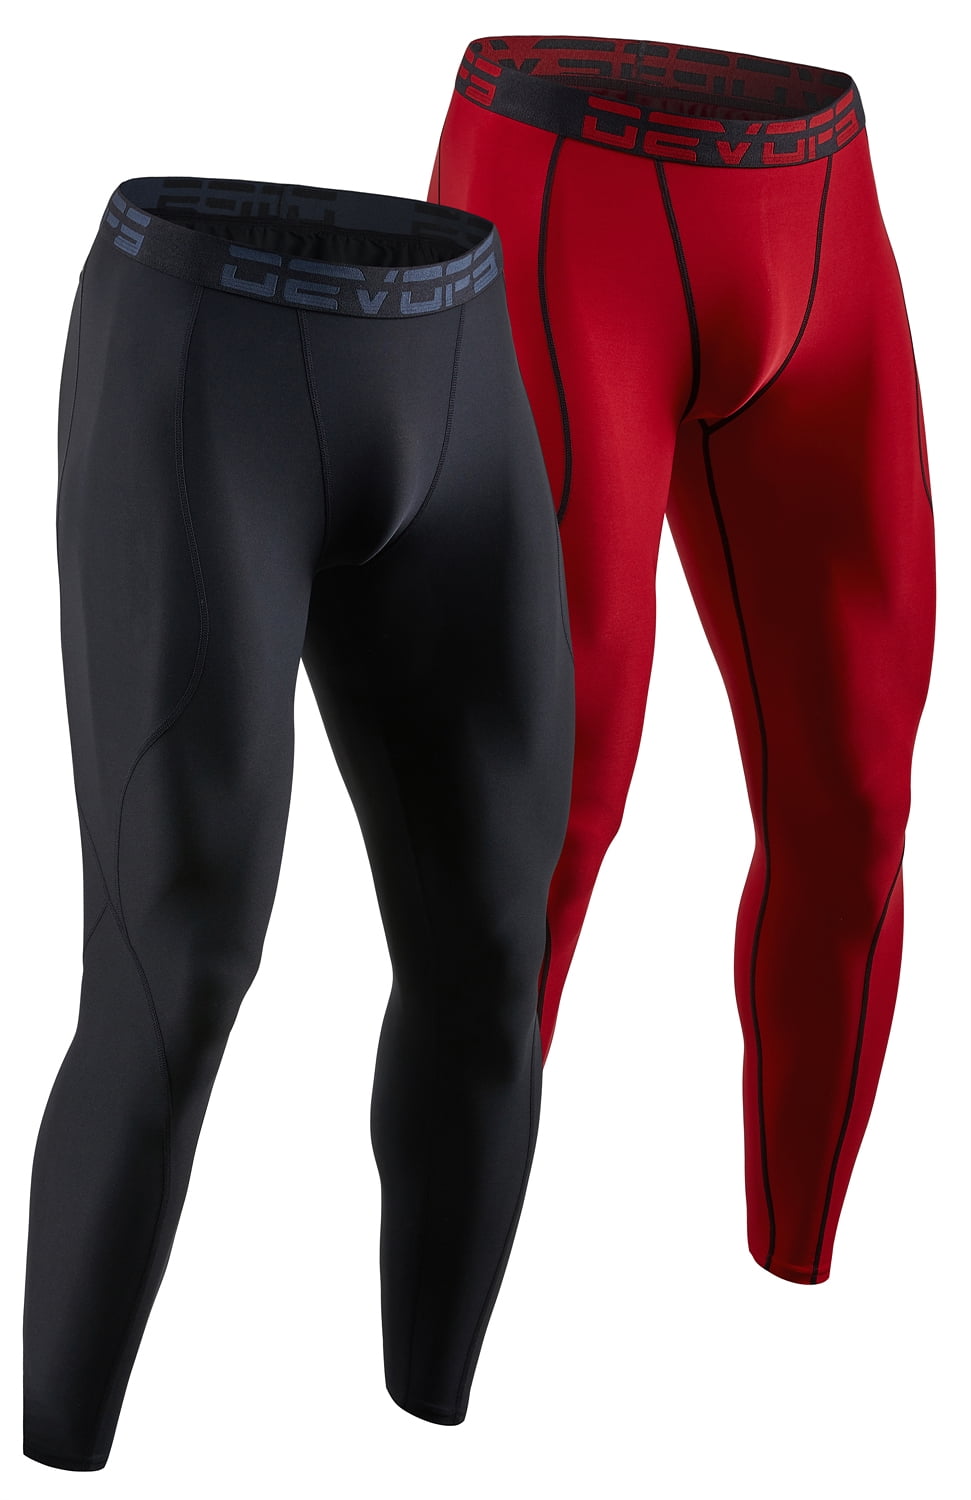 DEVOPS 2 Pack Men's Compression Pants Athletic Leggings (2X-Large, Black/Red)  